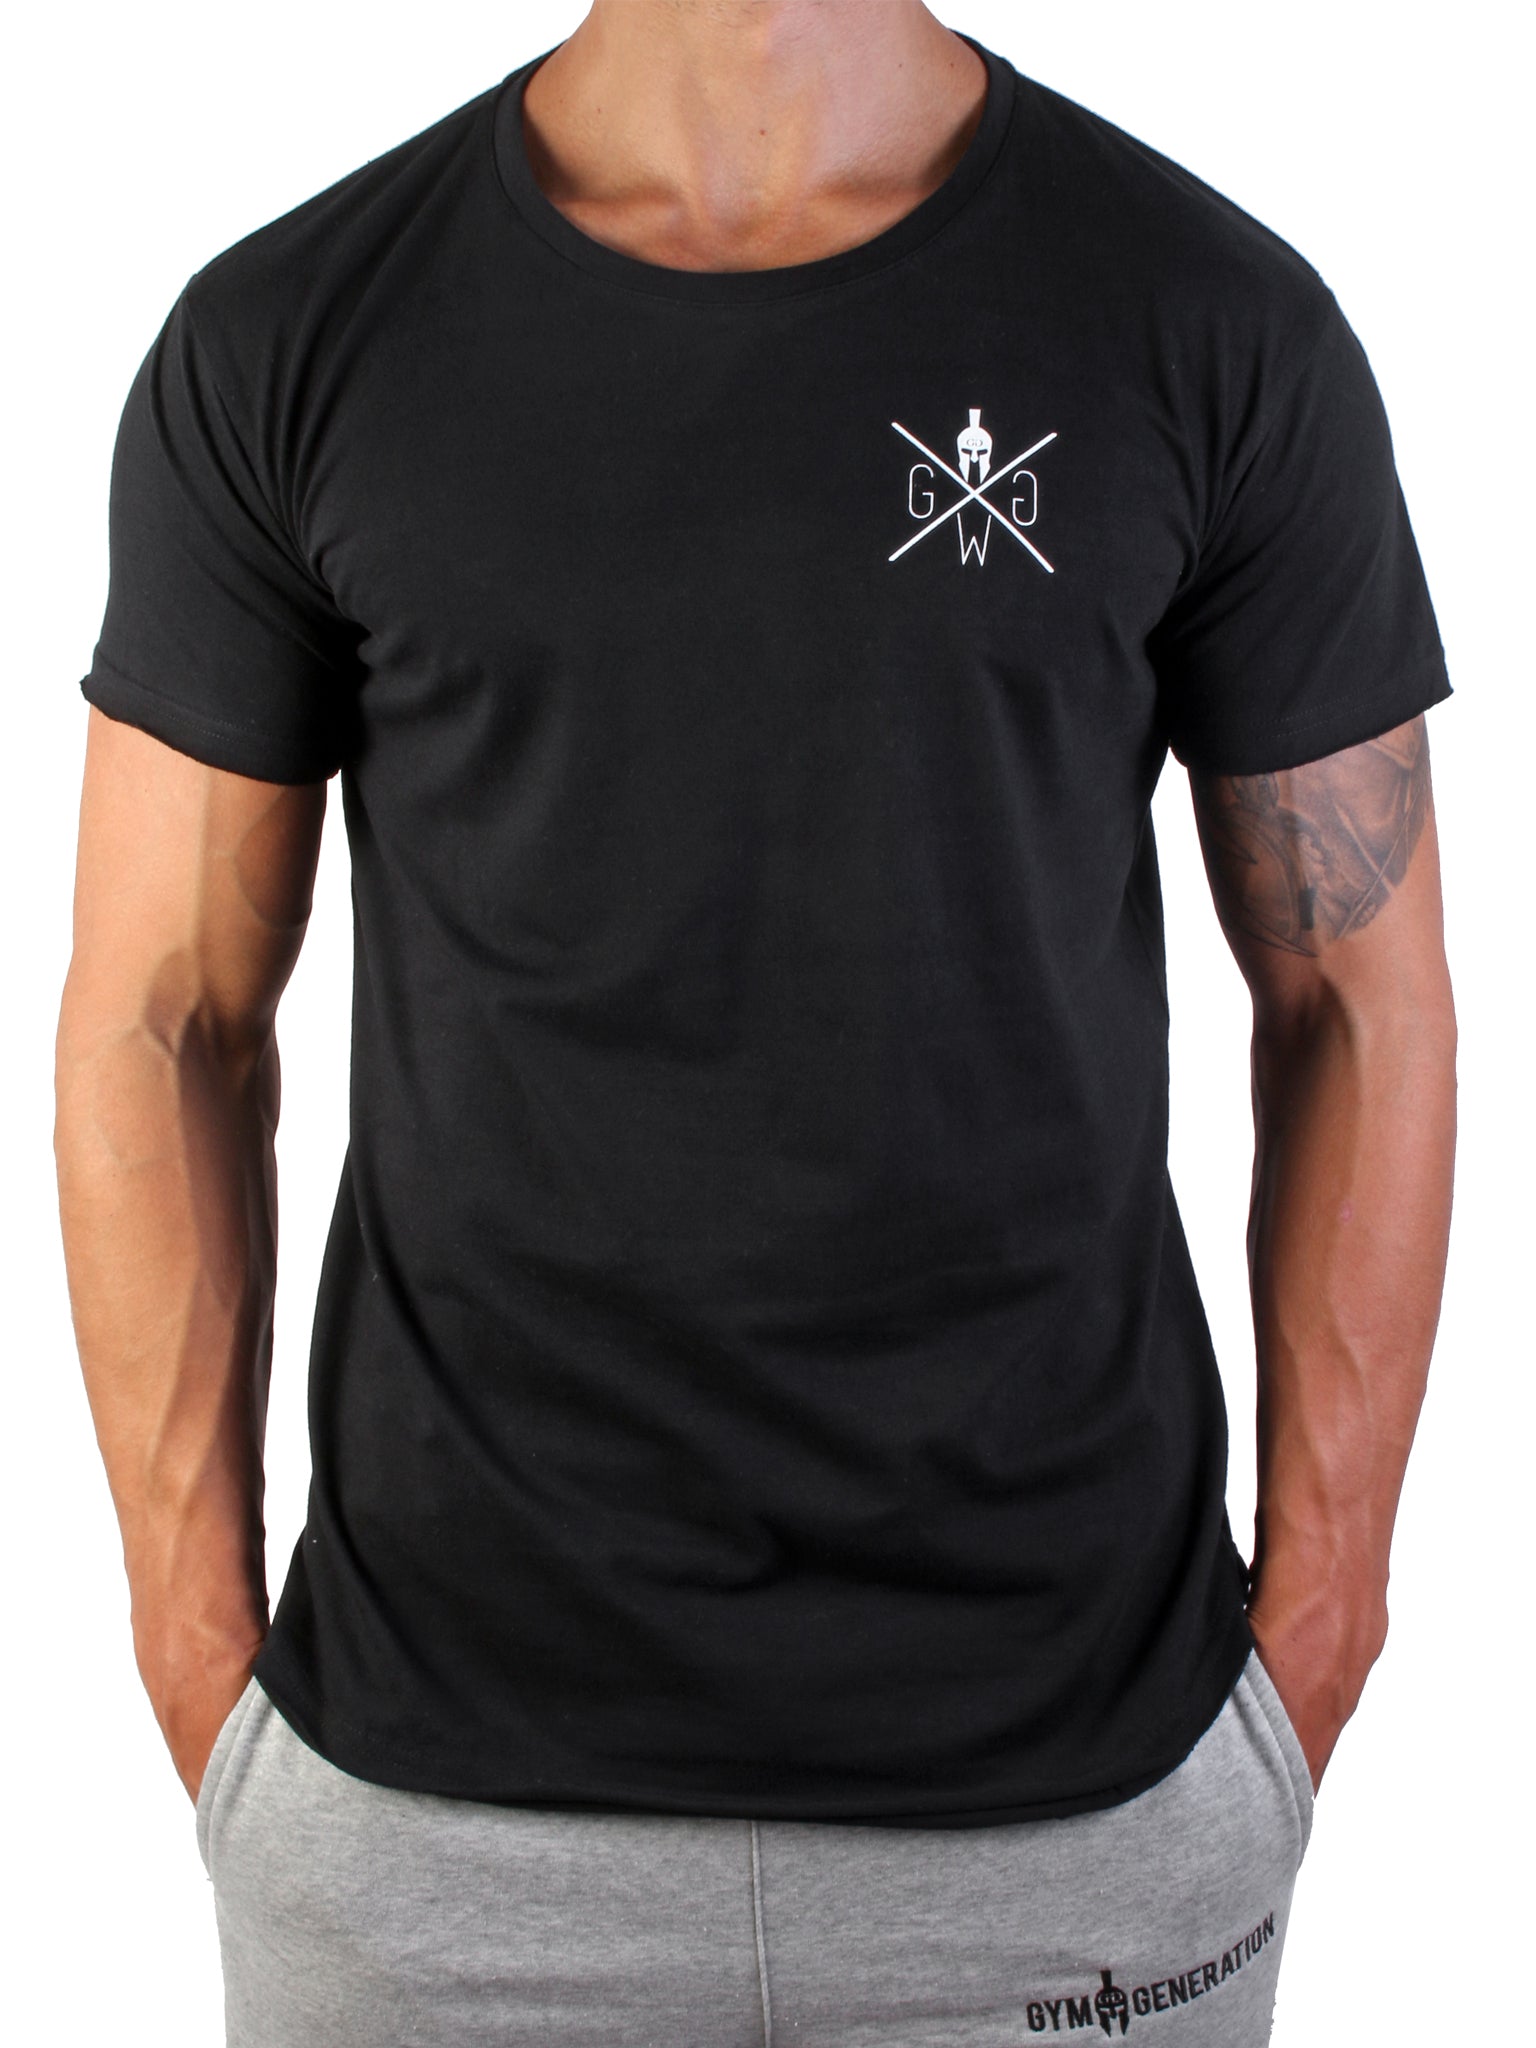 Hochwertiges schwarzes Herren T-Shirt aus 100% Baumwolle mit ikonischem Spartaner-Logo von Gym Generation.